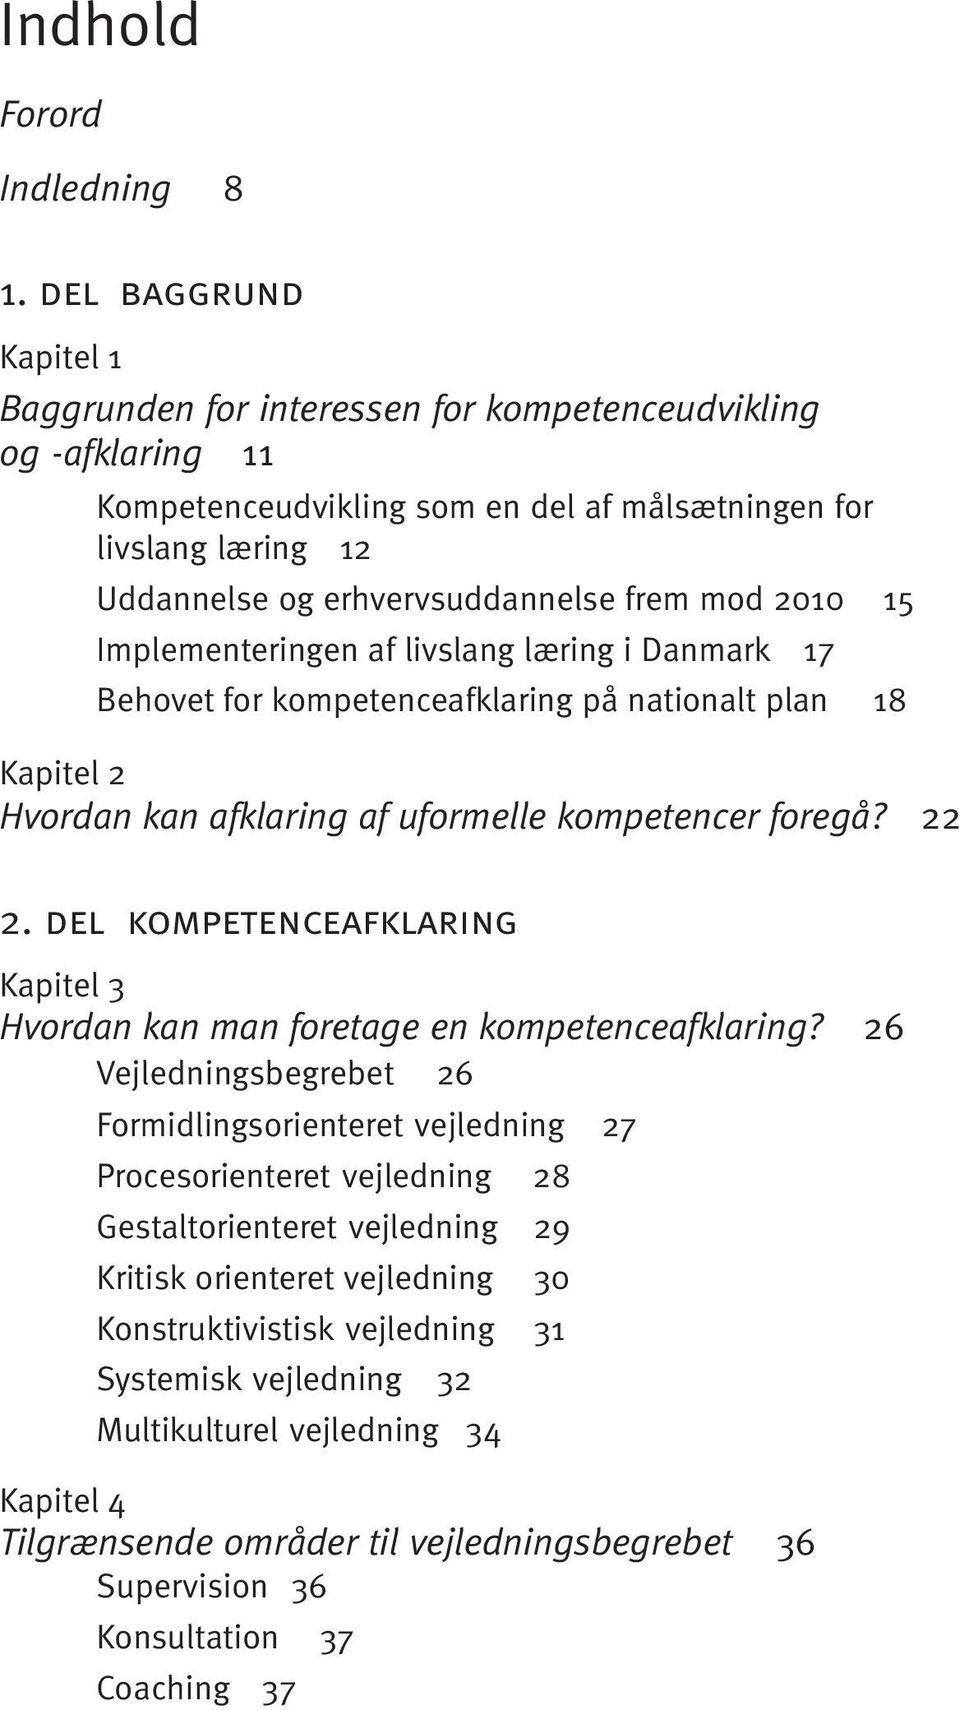 mod 2010 15 Implementeringen af livslang læring i Danmark 17 Behovet for kompetenceafklaring på nationalt plan 18 Kapitel 2 Hvordan kan afklaring af uformelle kompetencer foregå? 22 2.